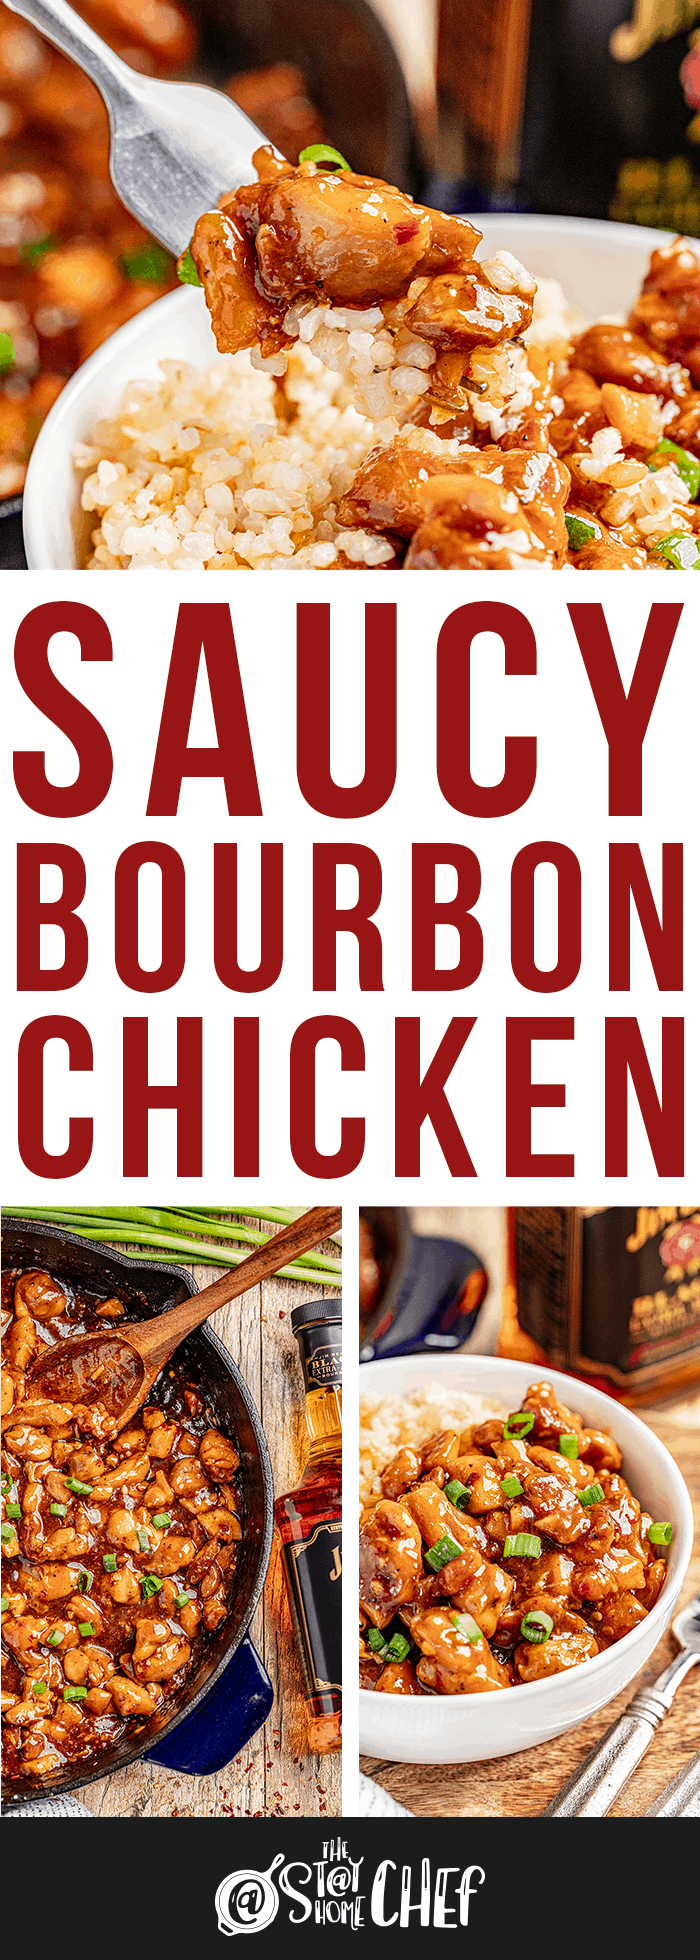 Saucy Bourbon Chicken